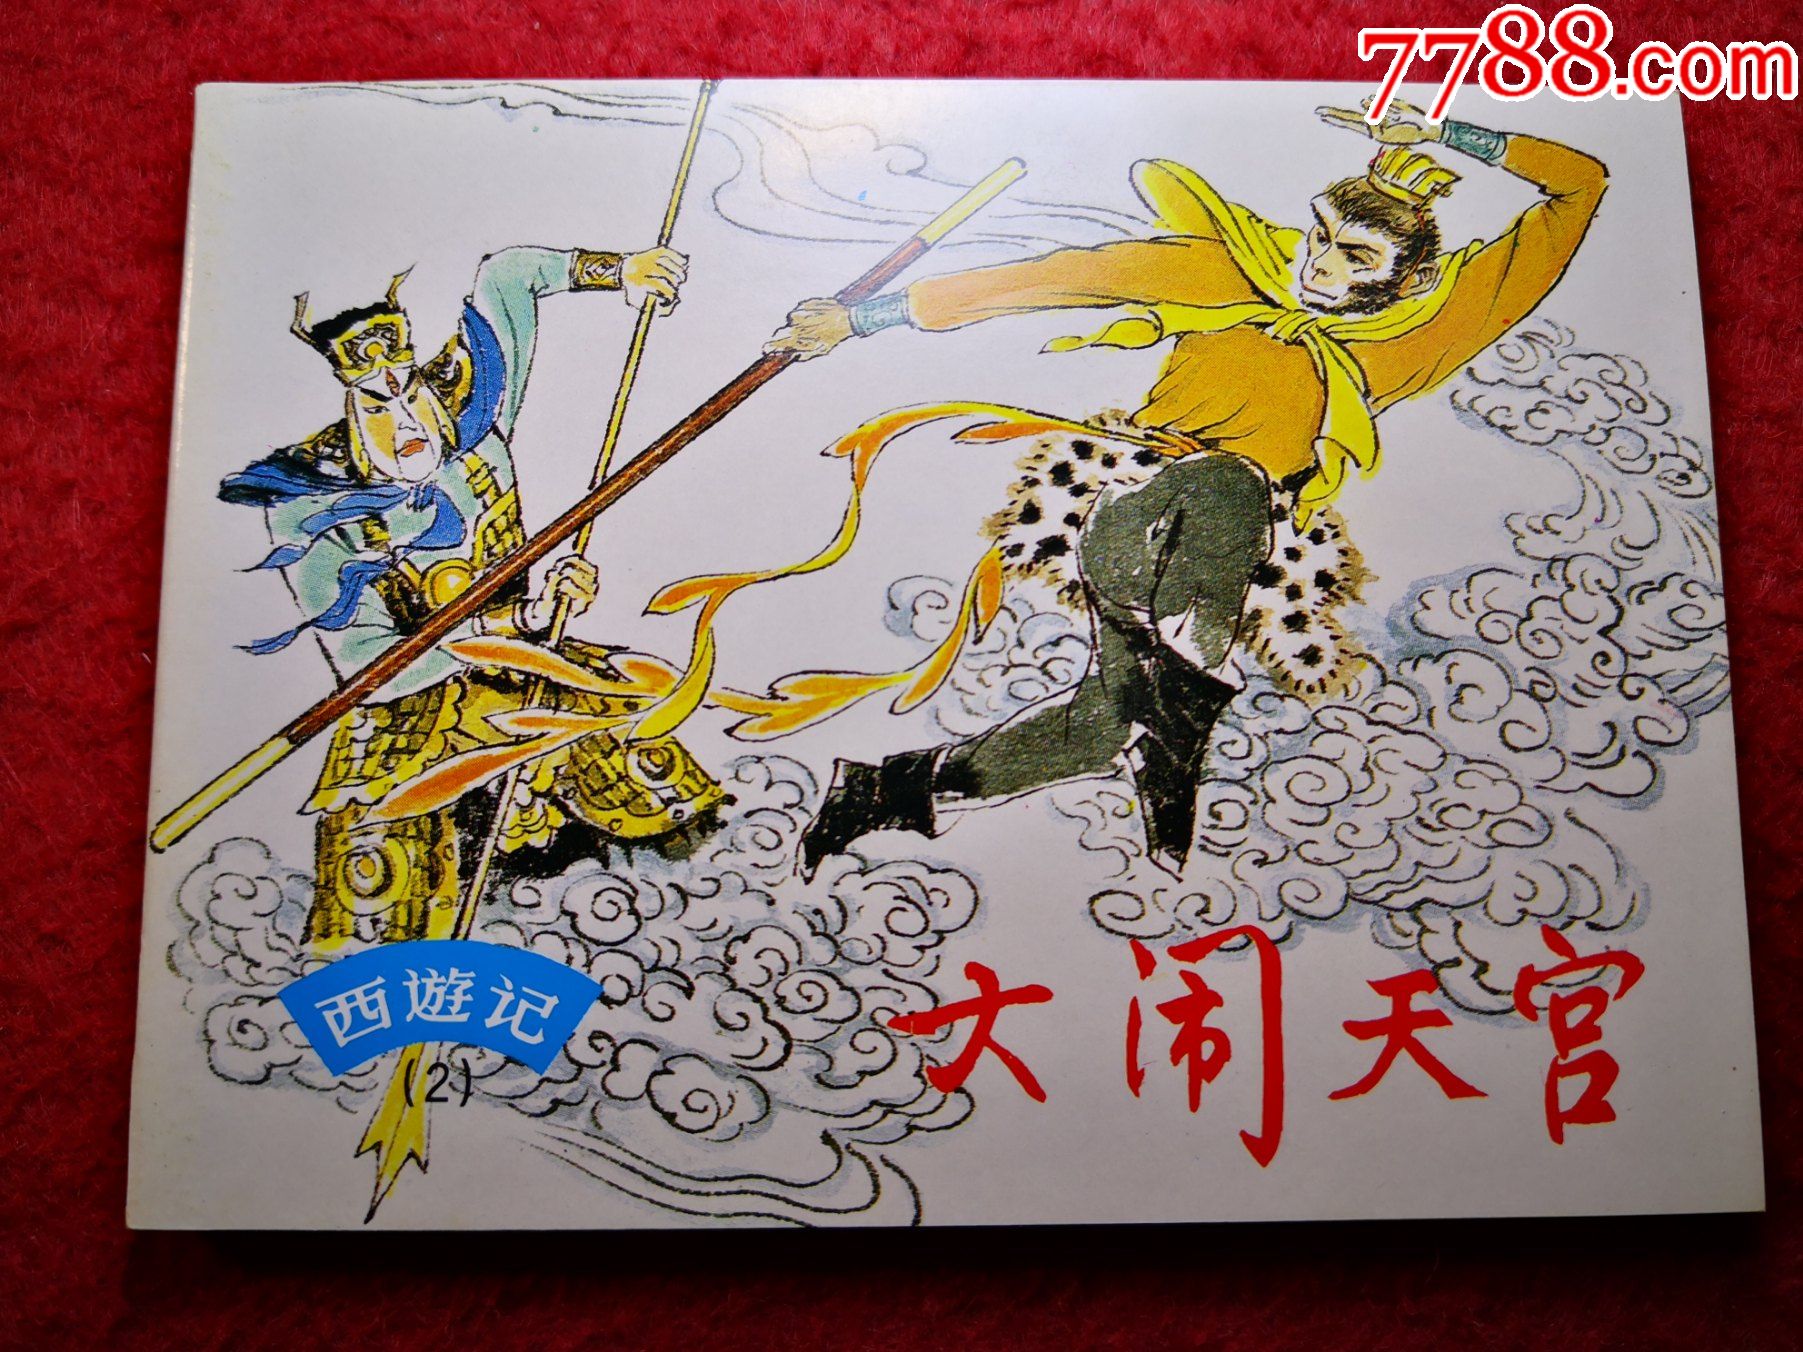 名著连环画,西游记(2)《大闹天宫》赵仁年绘画,上海人民美术出版社